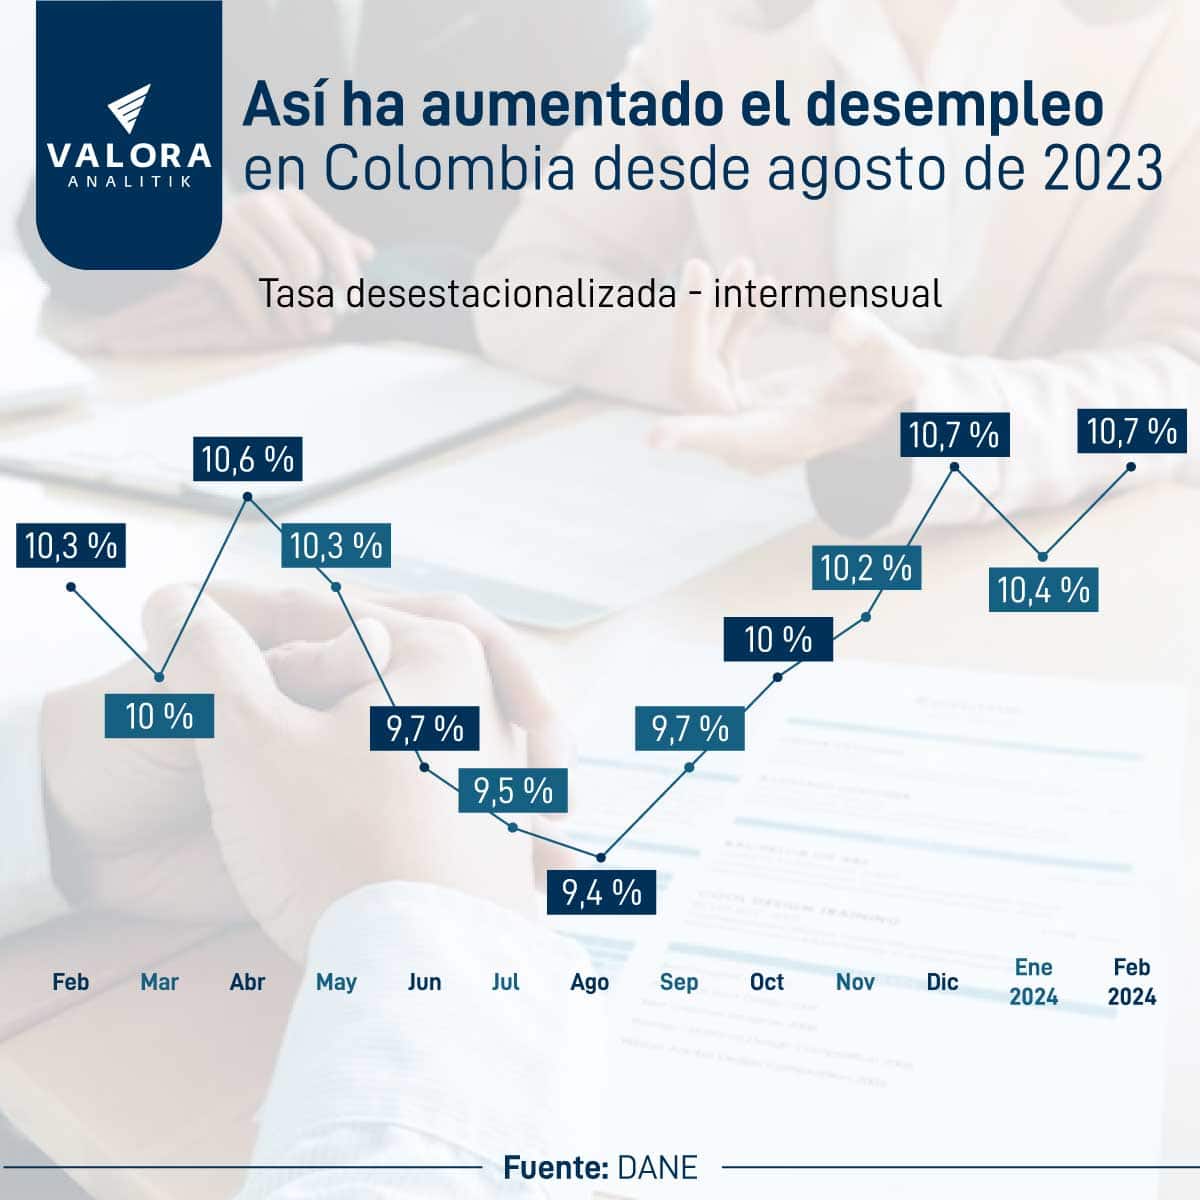 bajo crecimiento económico le estaría pasando factura al empleo en colombia